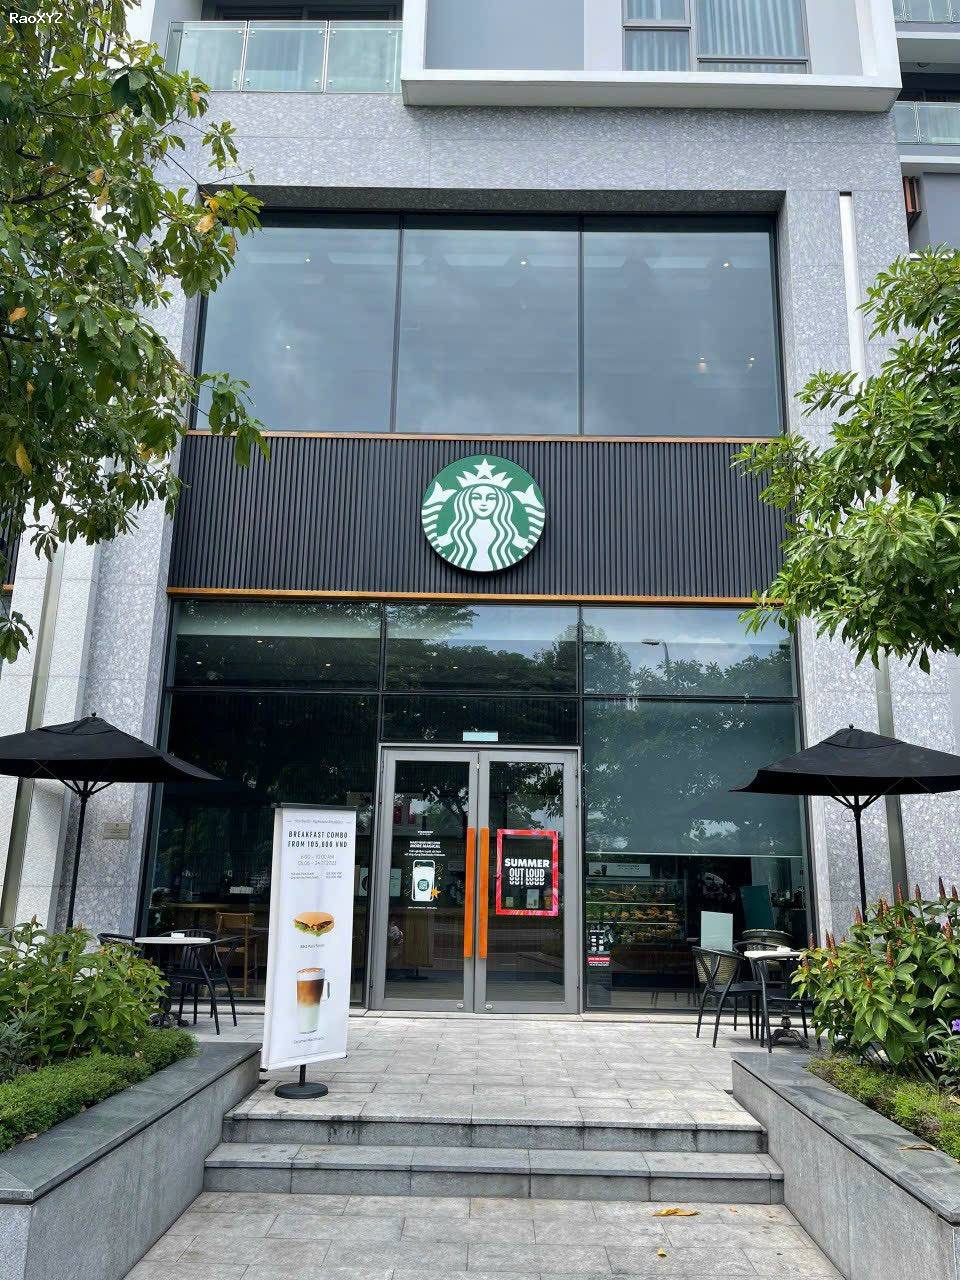 bán Shophouse Starbuck tại Urban Hill Phú Mỹ Hưng - mua trực tiếp cđt - có sẵn hợp đồng thuê